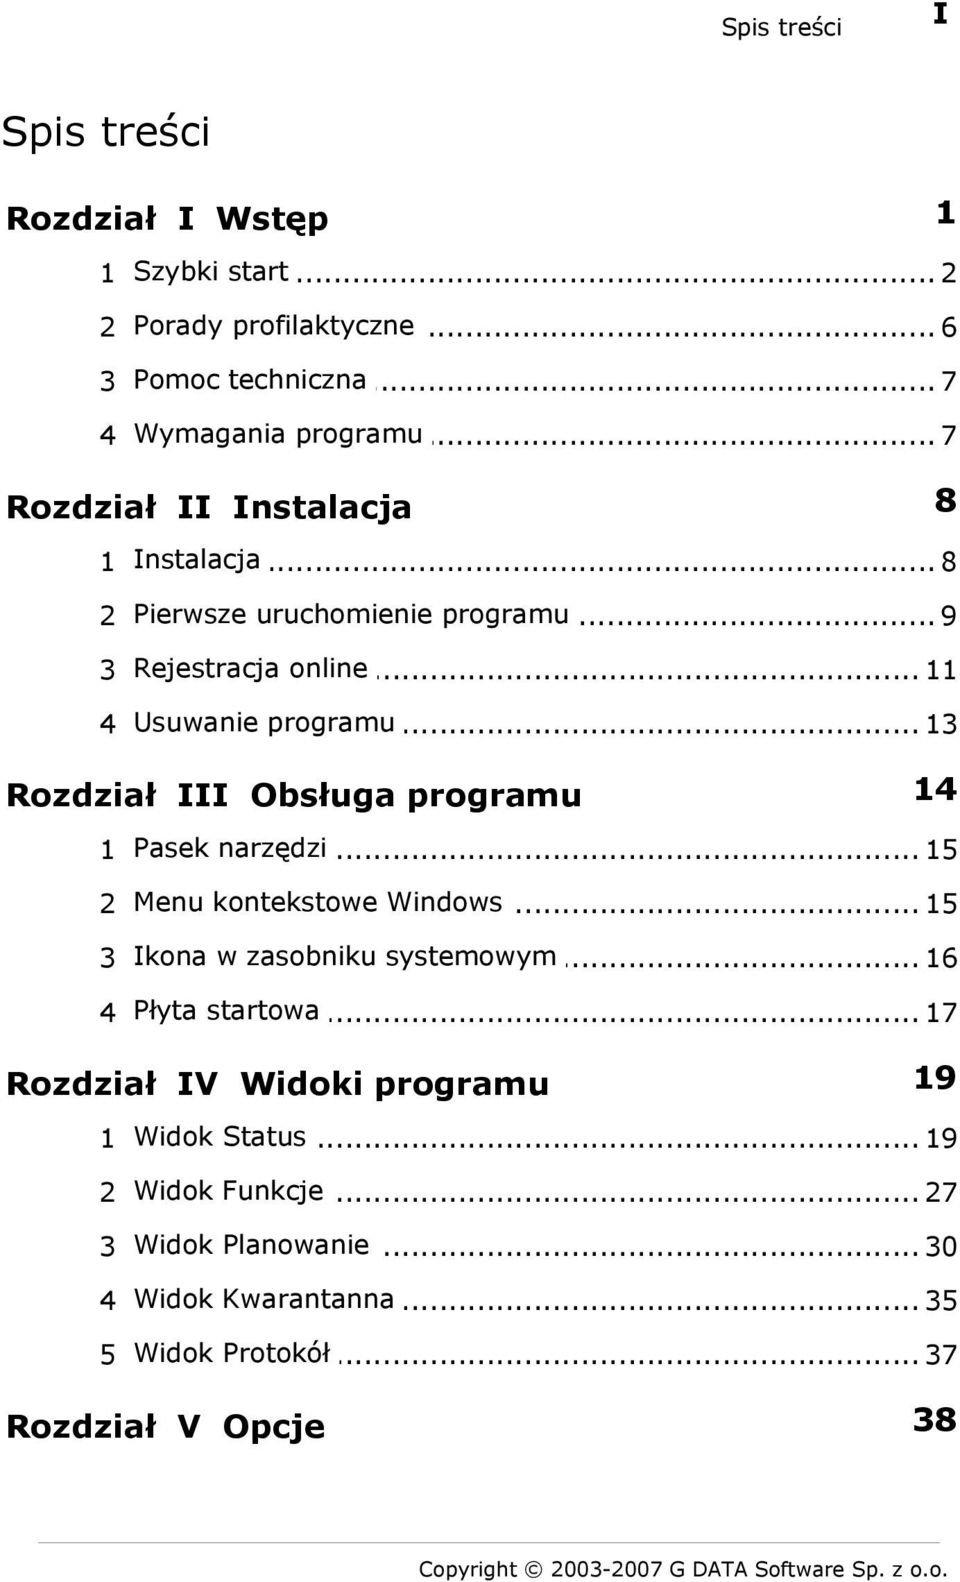 .. 13 Rozdział III Obsługa programu 14 narzędzi 1 Pasek... 15 kontekstowe Windows 2 Menu... 15 w zasobniku systemowym 3 Ikona... 16 startowa 4 Płyta.